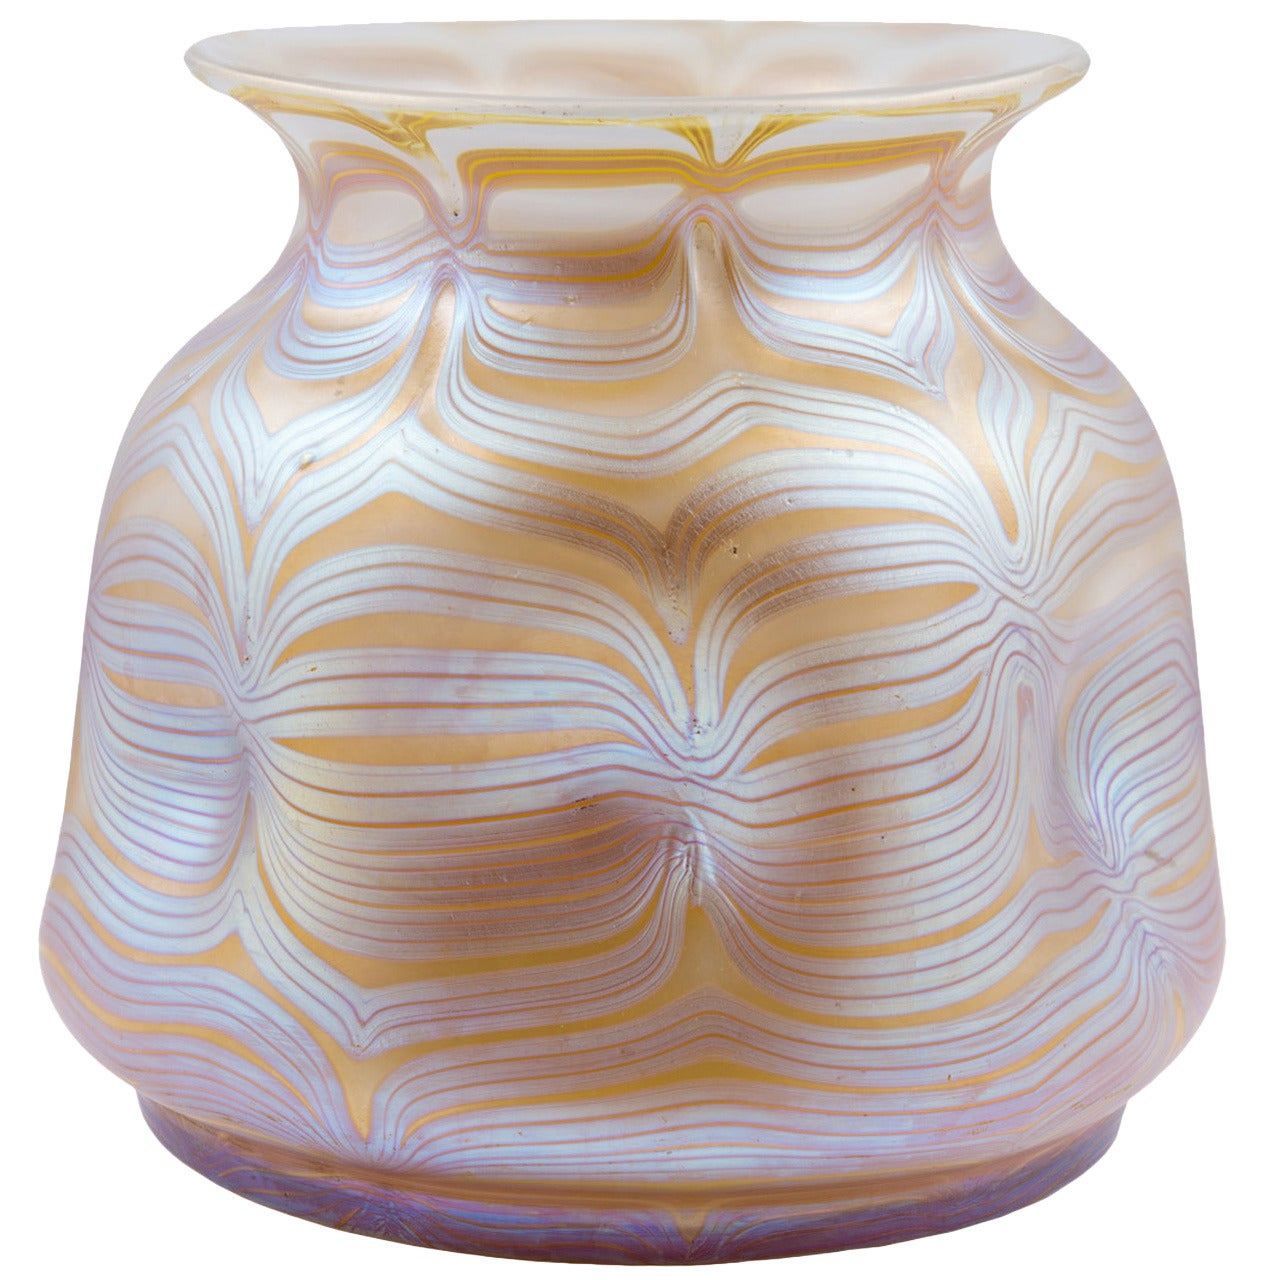 Loetz Signed Early Monumental Vase, Phenomen Gre 85/3780